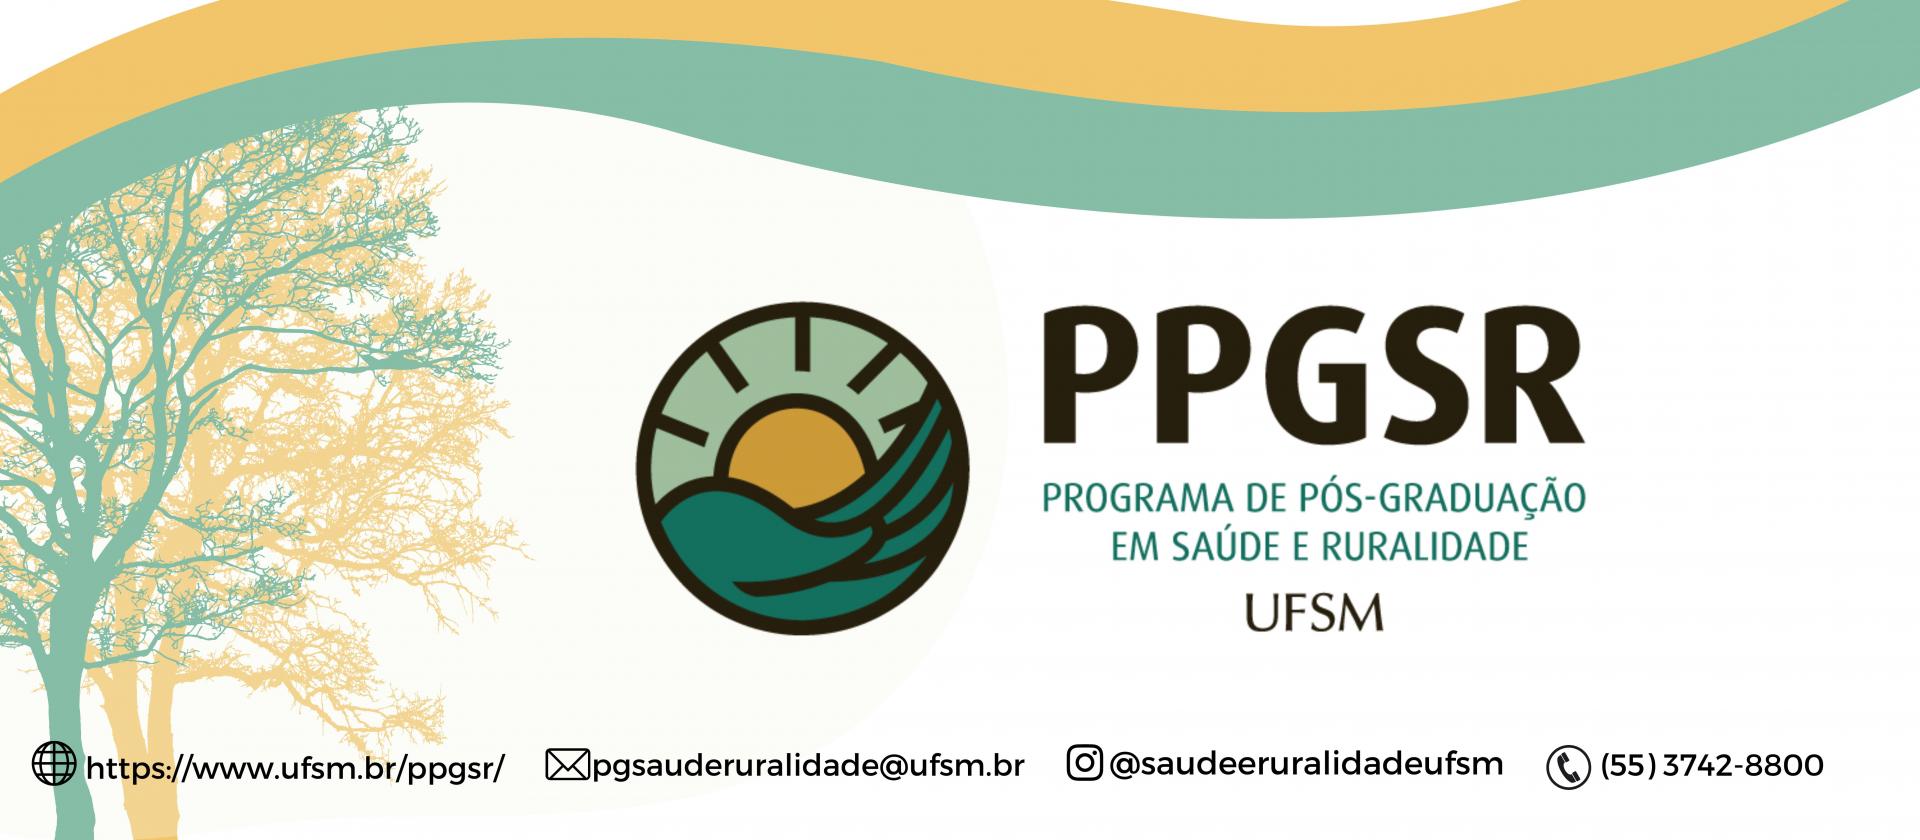 Banners seminário e ppgsr (1)